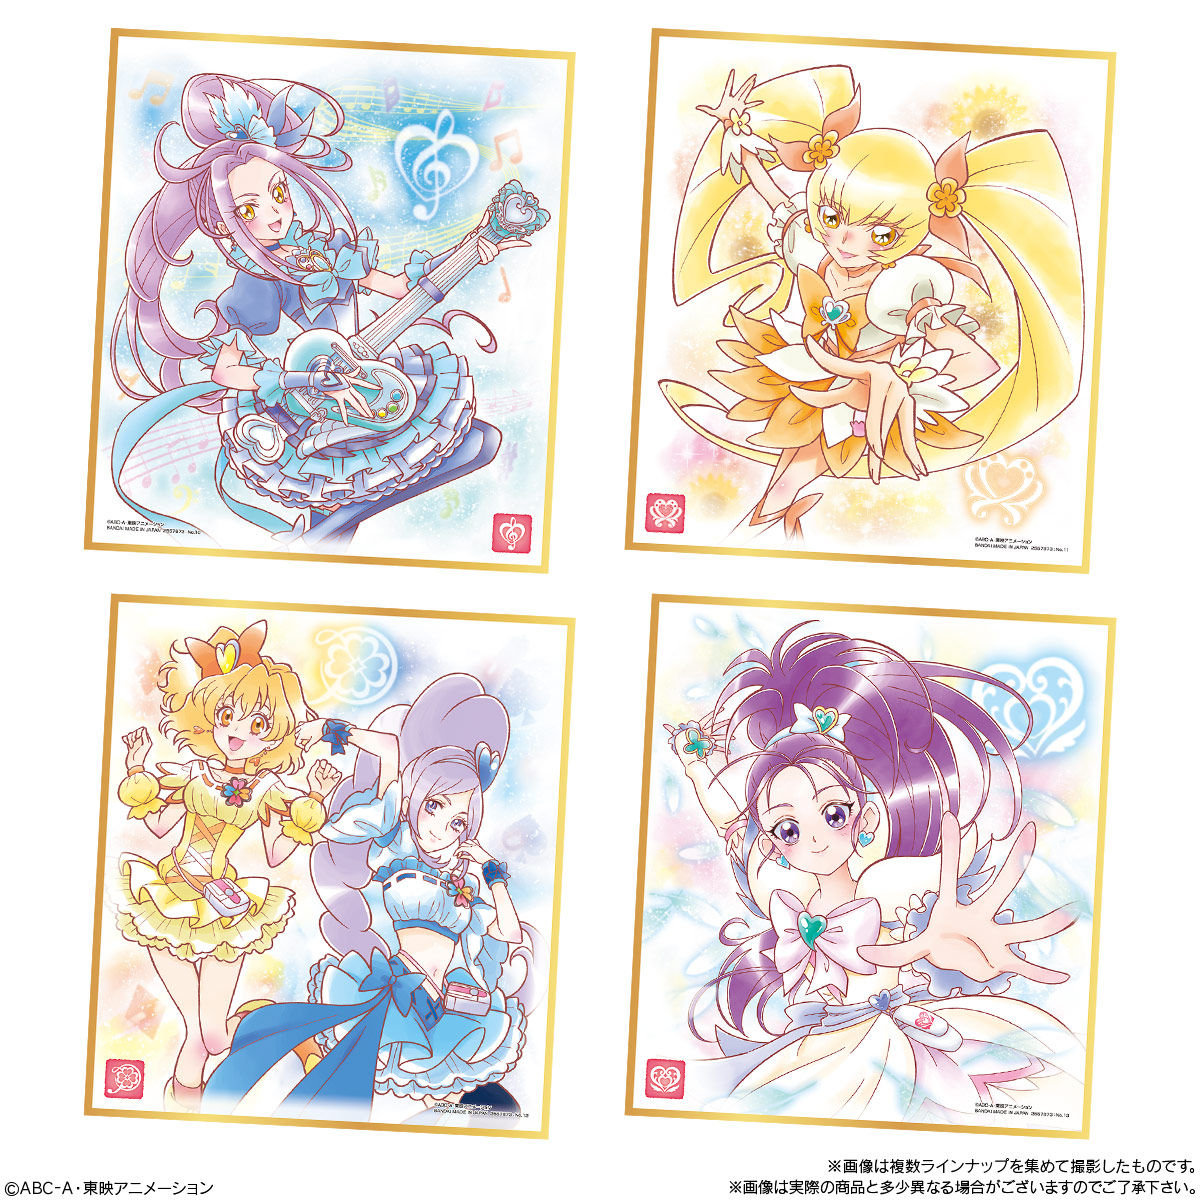 プリキュア 色紙art4 発売日 21年2月22日 バンダイ キャンディ公式サイト